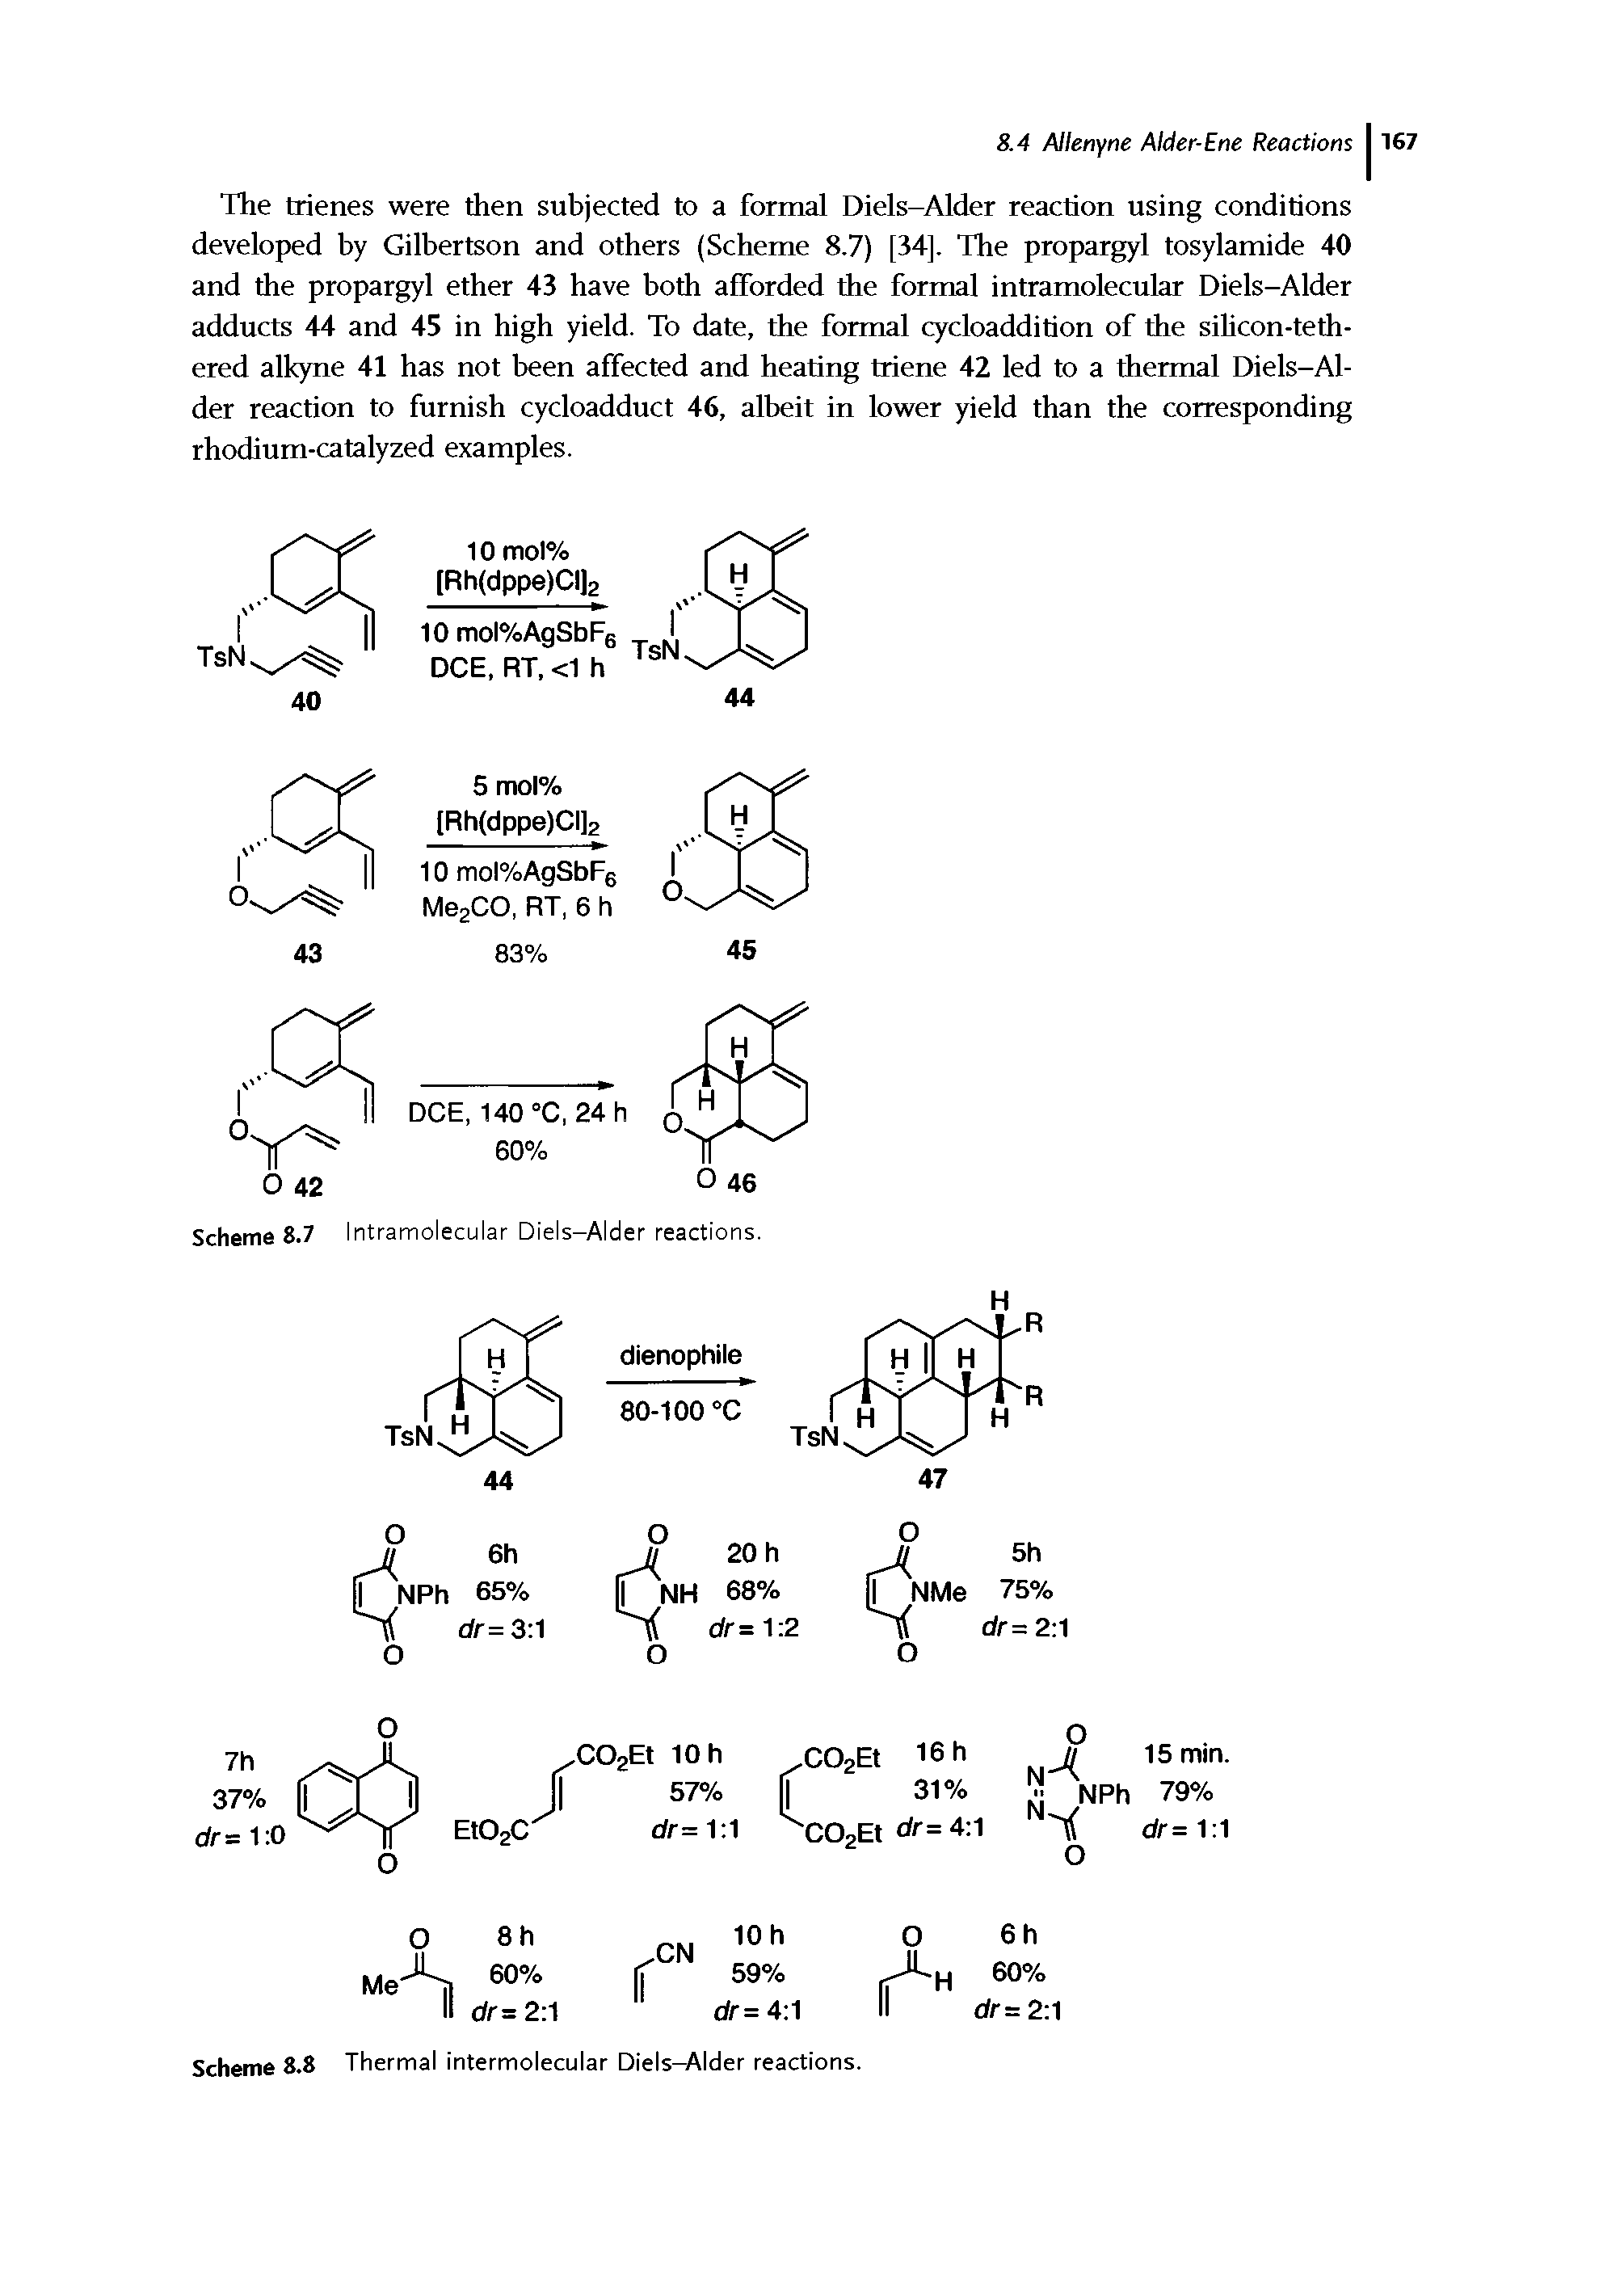 Scheme 8.8 Thermal intermolecular Diels-Alder reactions.